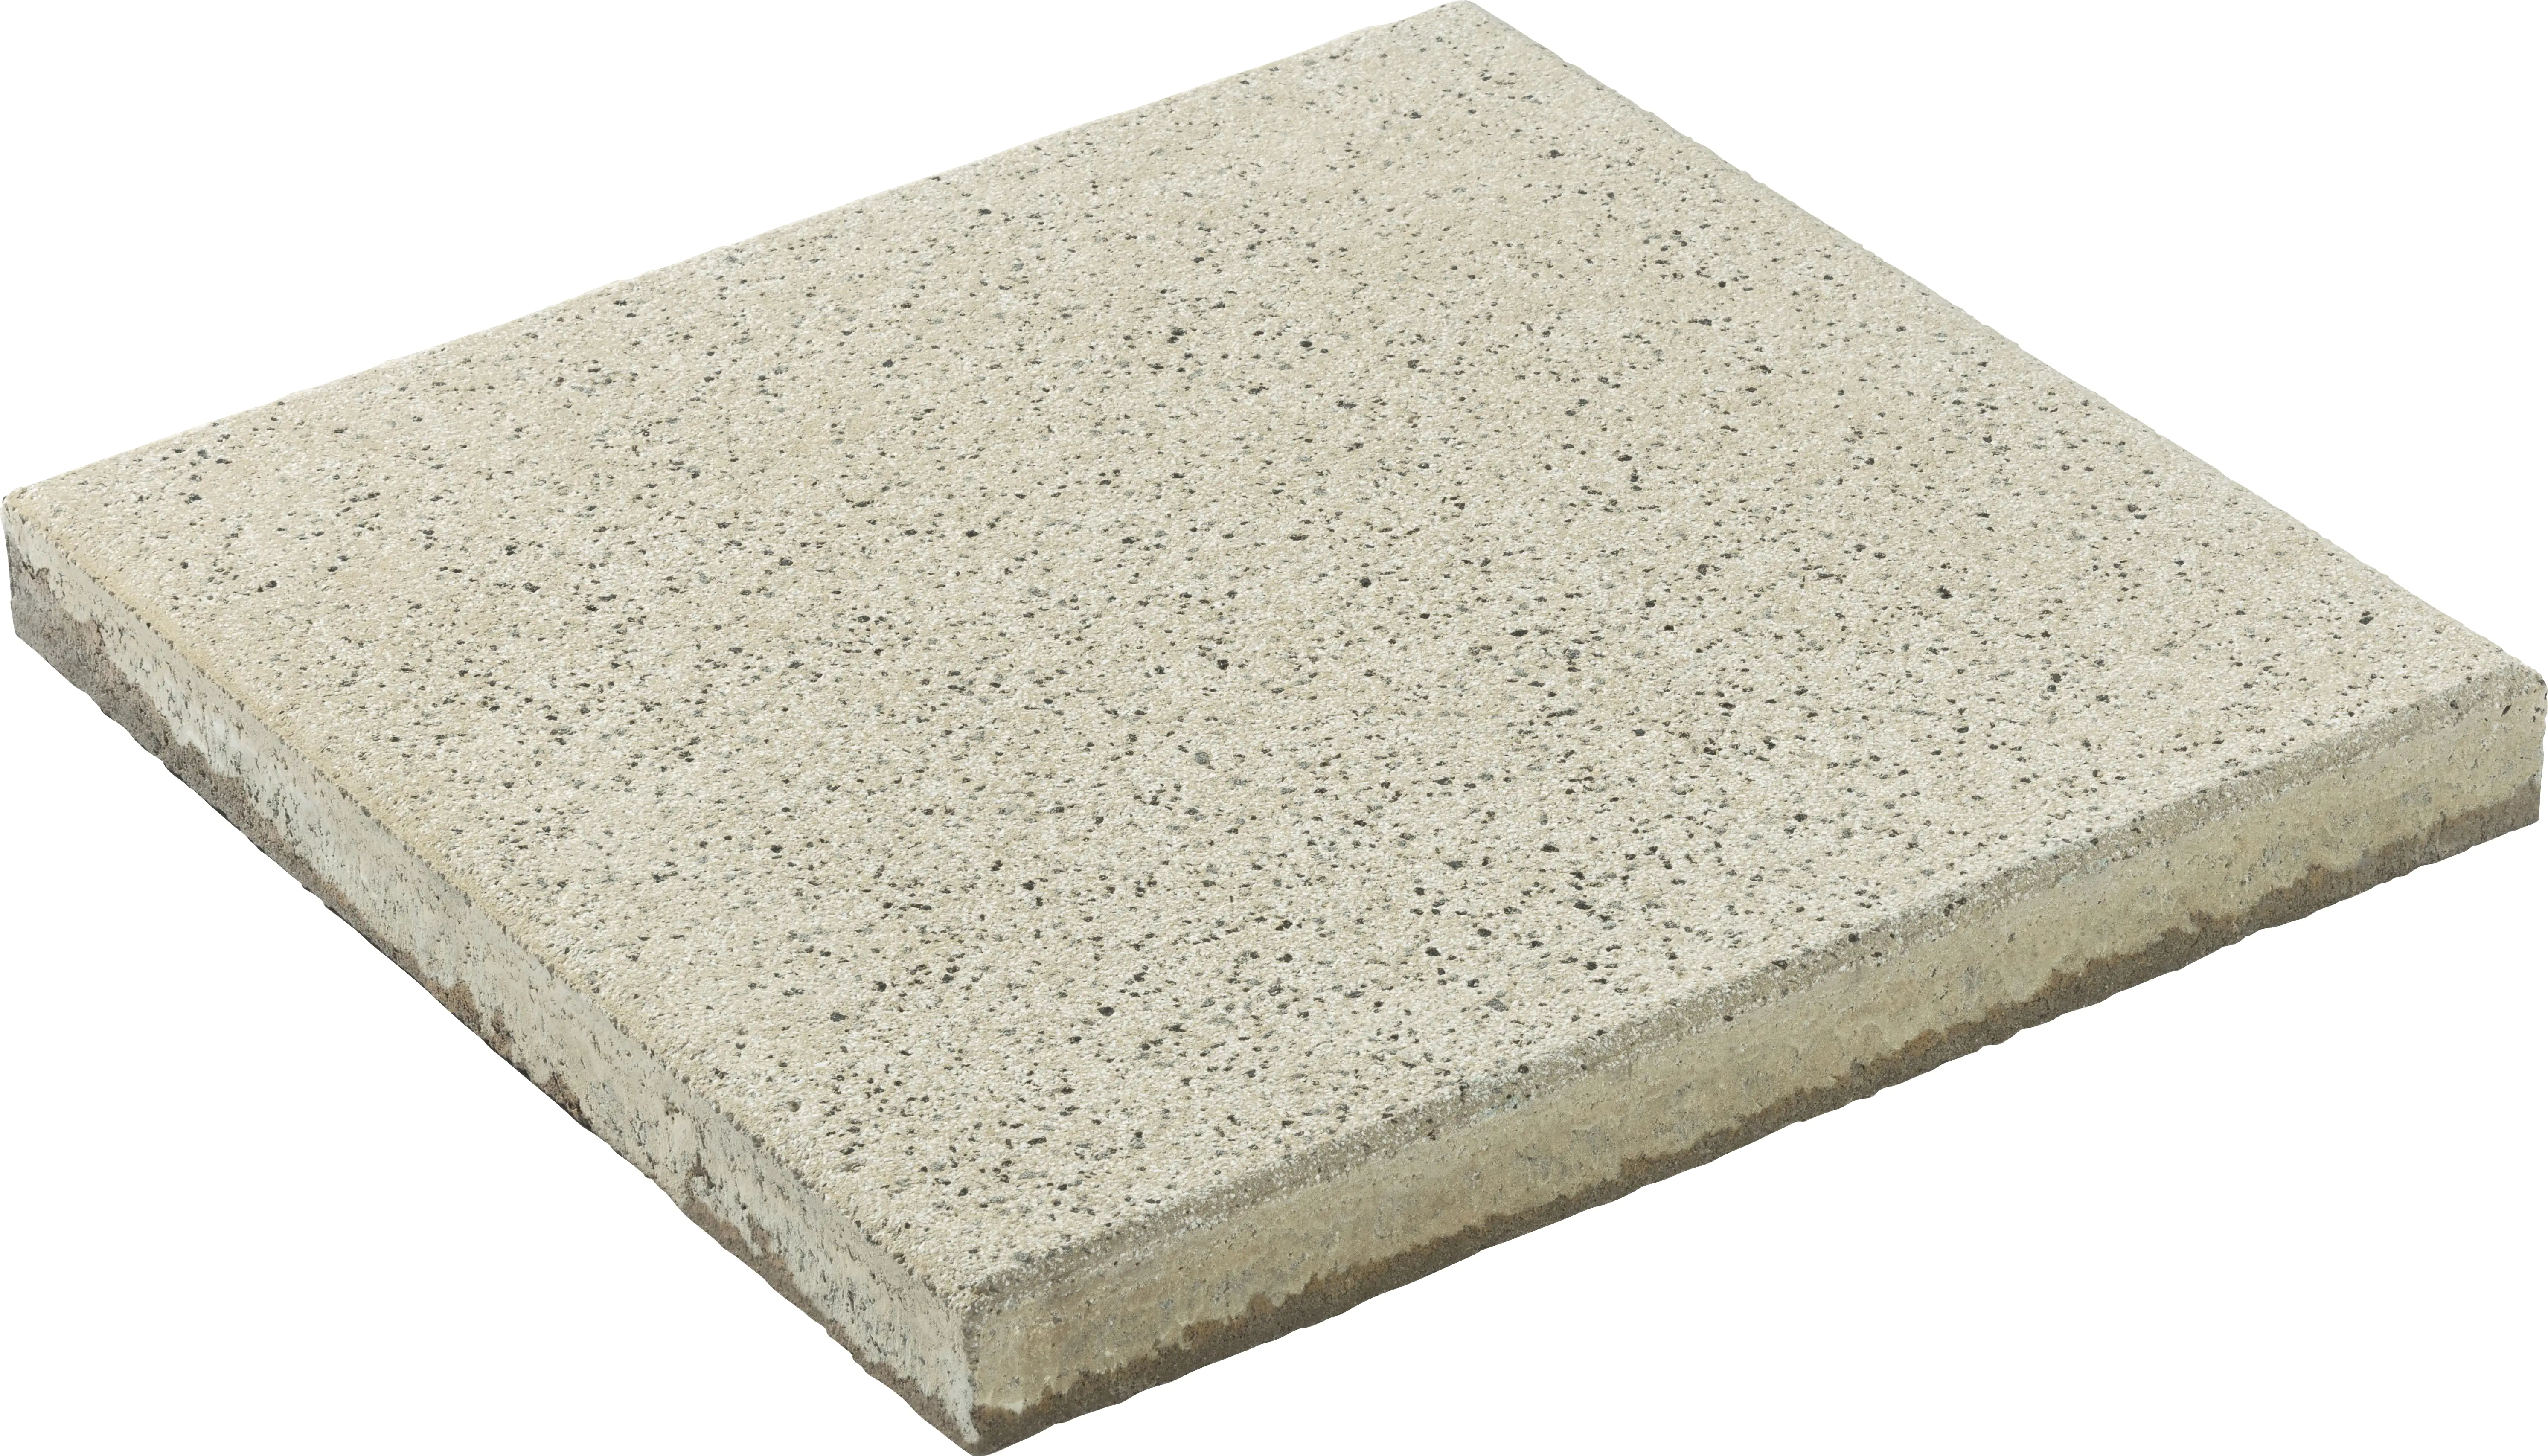 Diephaus Terrassenplatte Mendo 40 x 40 x 4 cm sandstein kaufen | Globus  Baumarkt